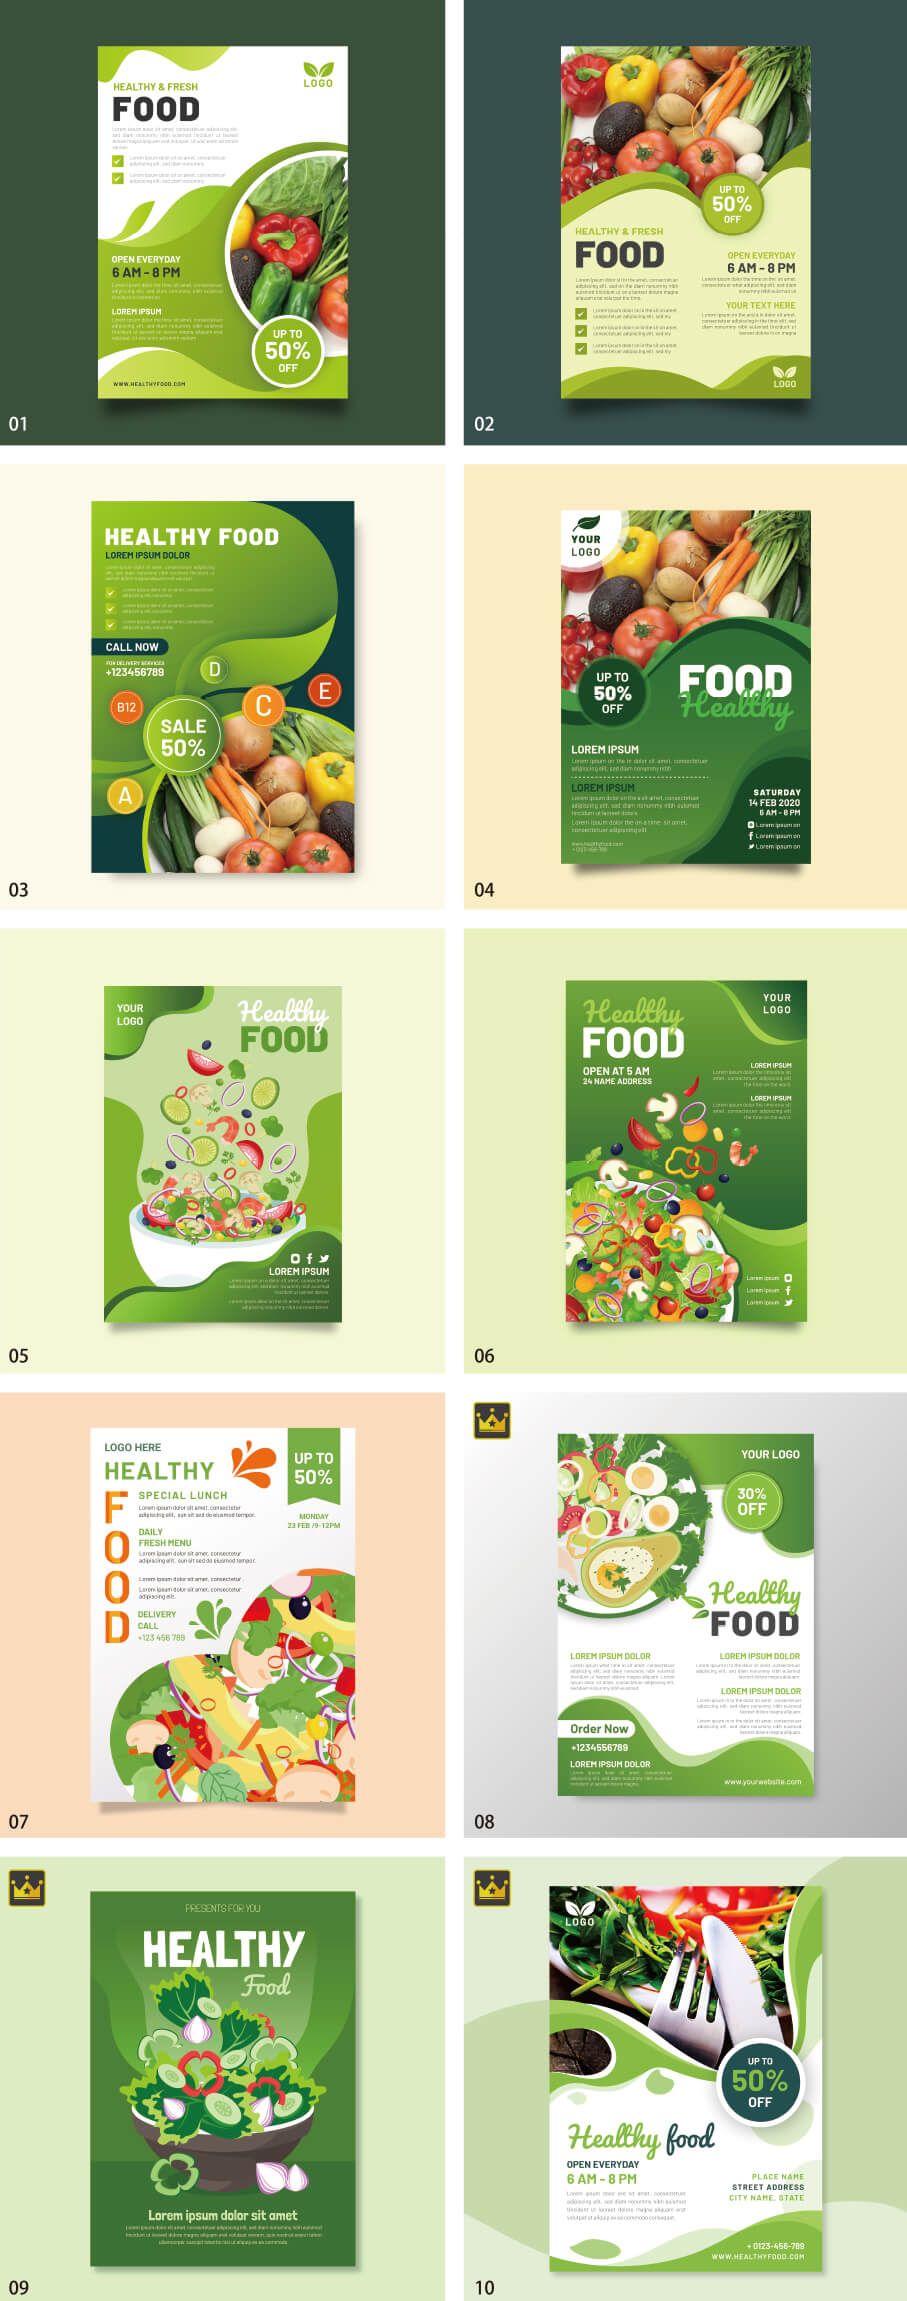 健康食品海報模板